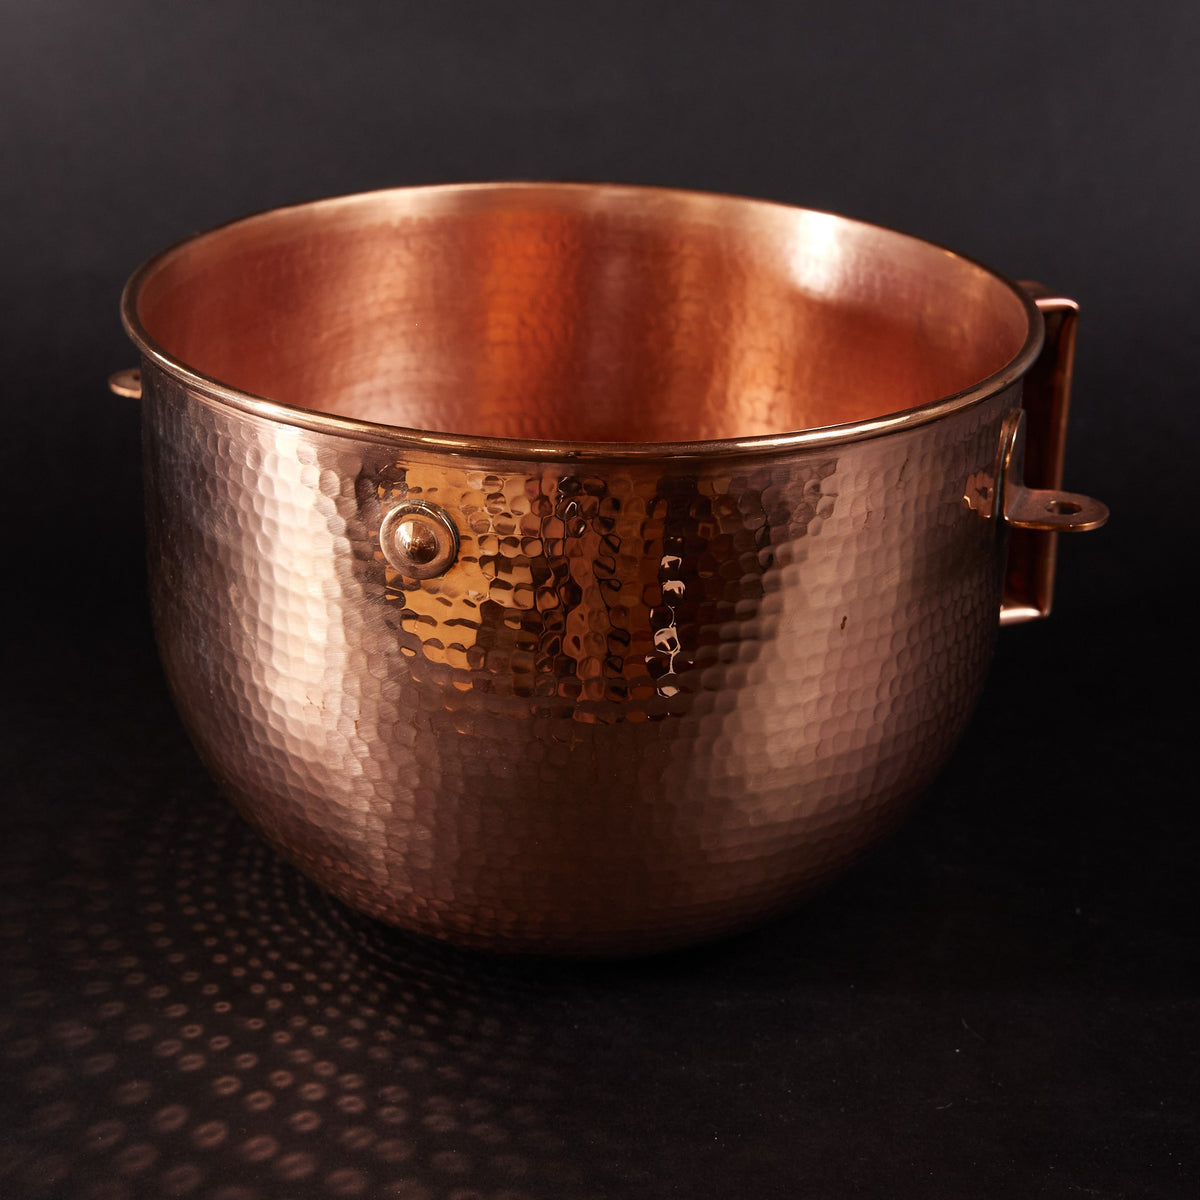 Copper Mixing Bowl for KitchenAid Lift Stand Mixers - fits 5, 6 and 7 quart Mixer models